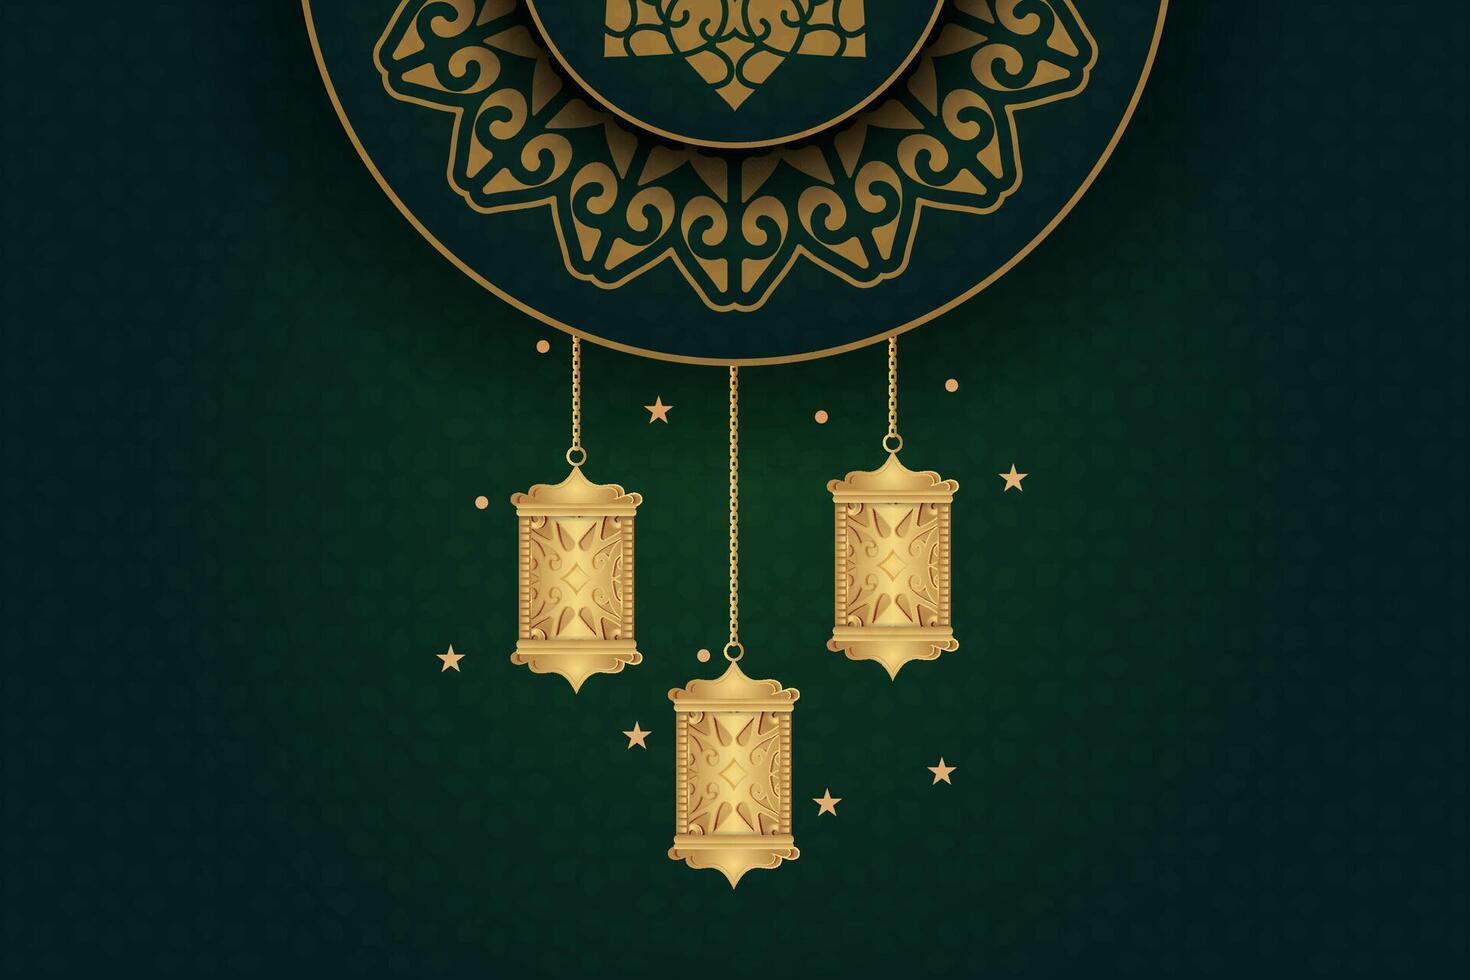 luxuoso eid al-fitr, Ramadhan feriado decoração cumprimento cartão vetor